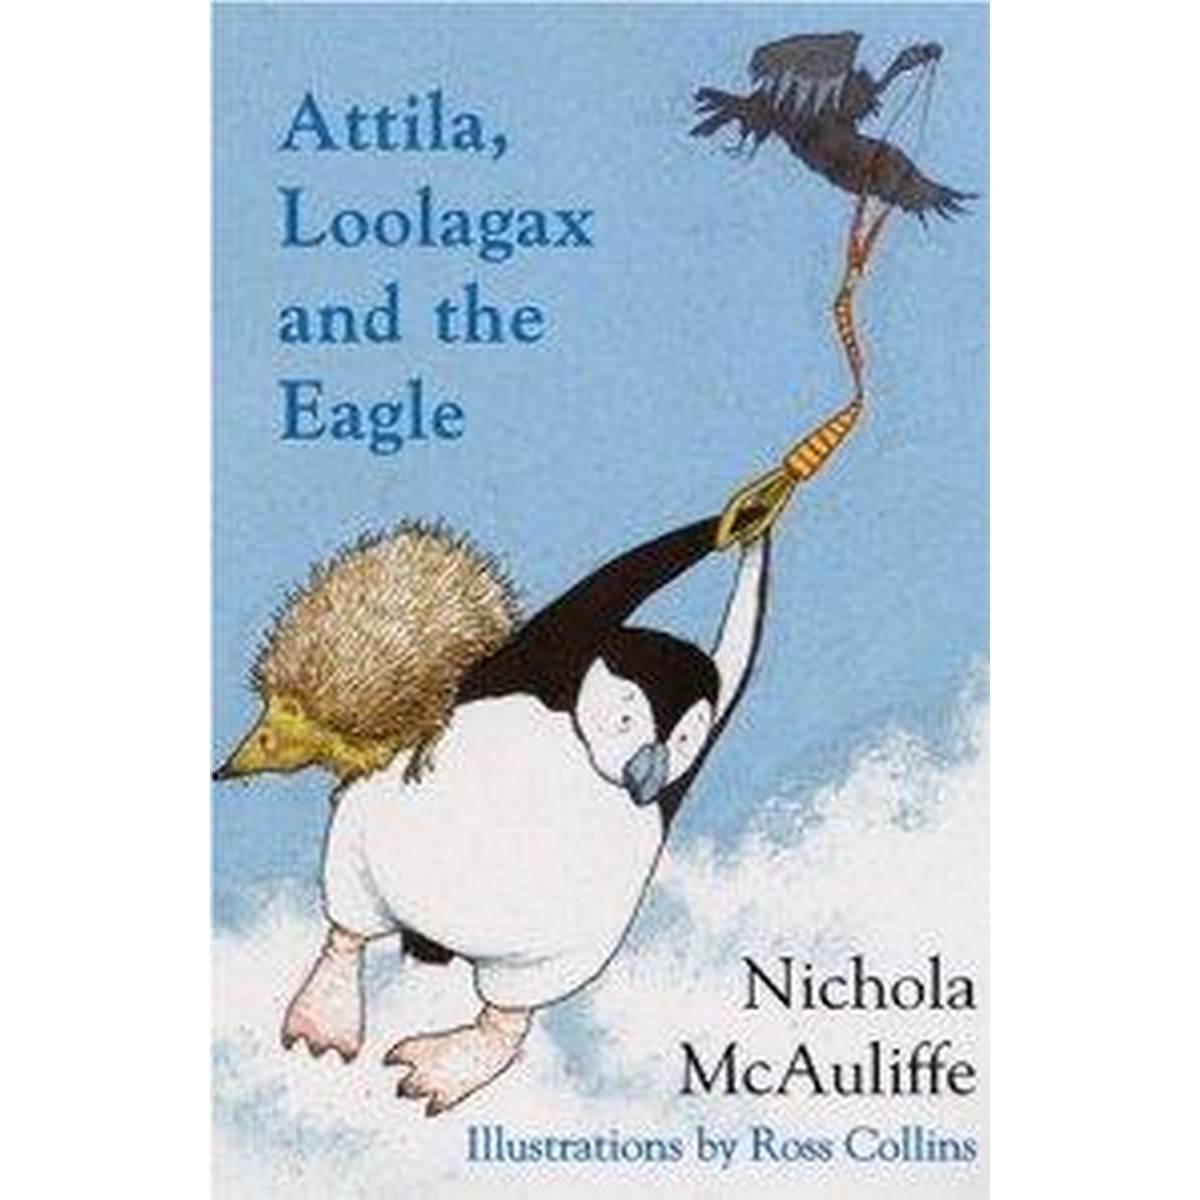 Attila, Loolagax and the Eagle